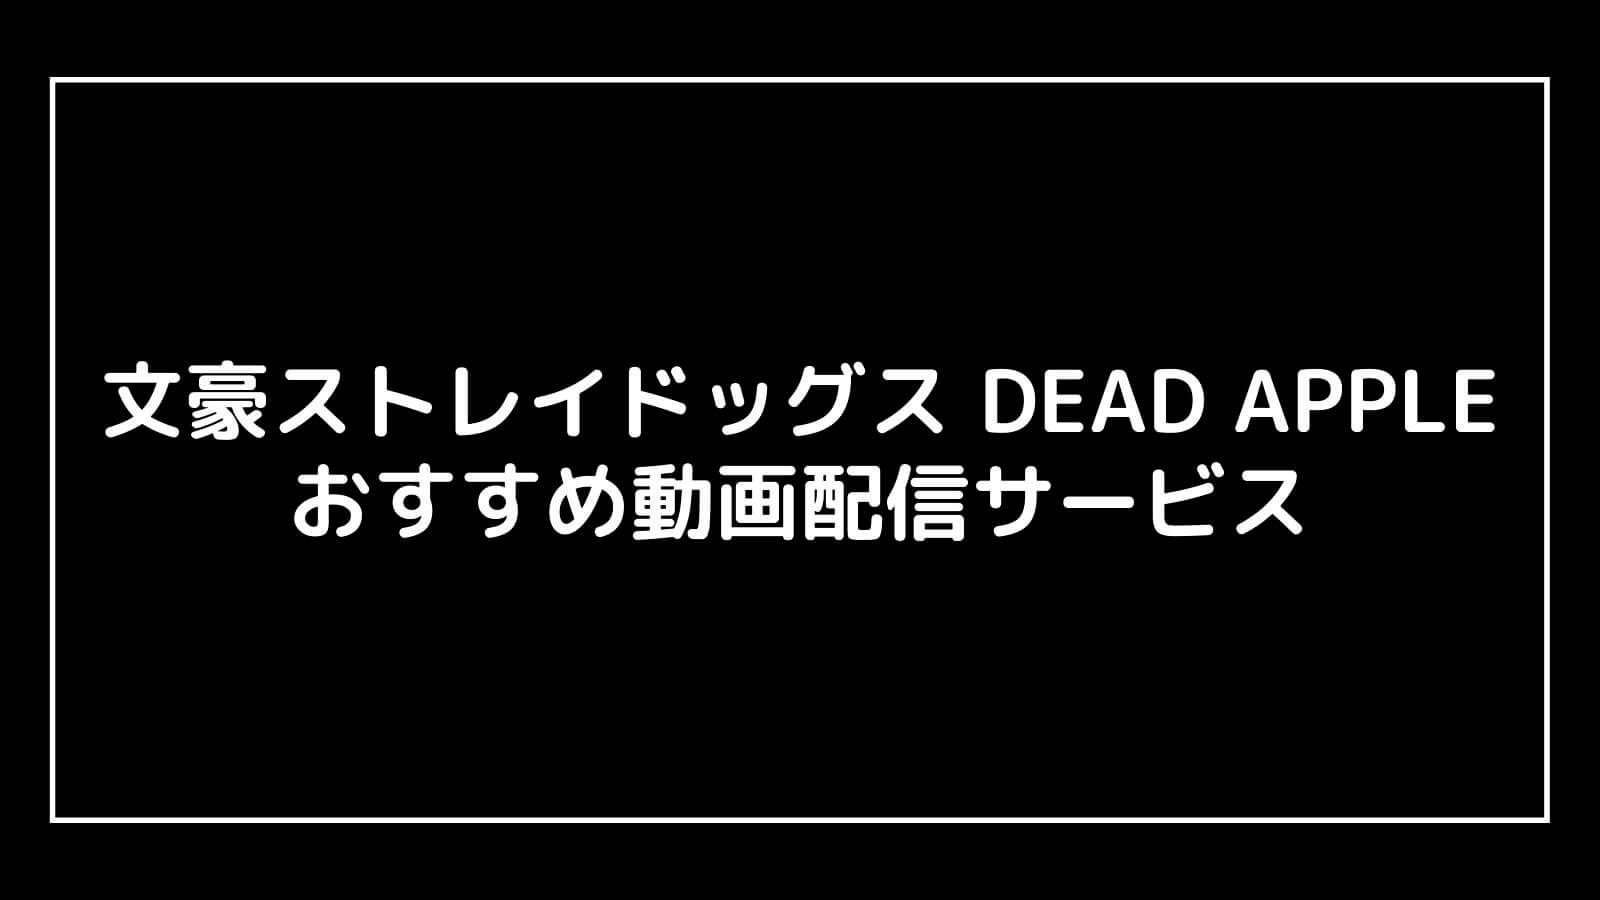 映画『文豪ストレイドッグス DEAD APPLE』の無料動画配信を視聴できるおすすめサブスク